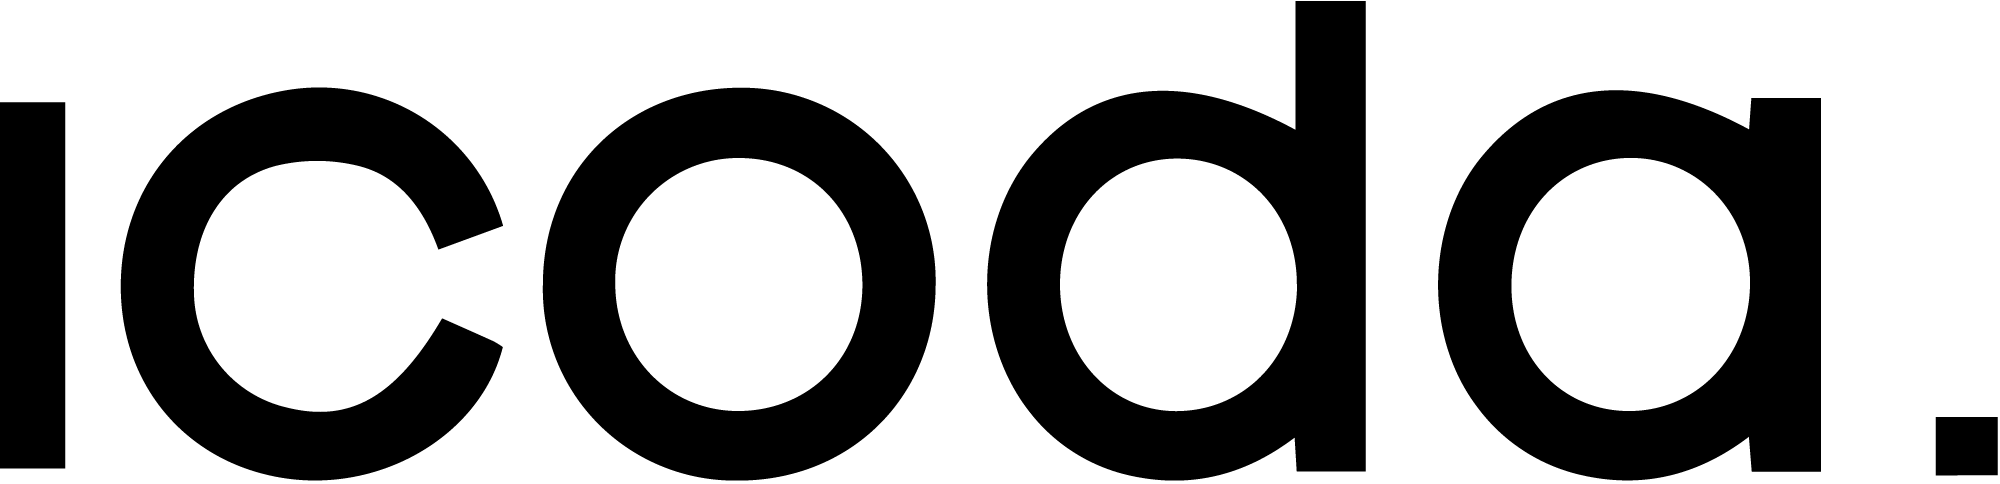 Icoda logo